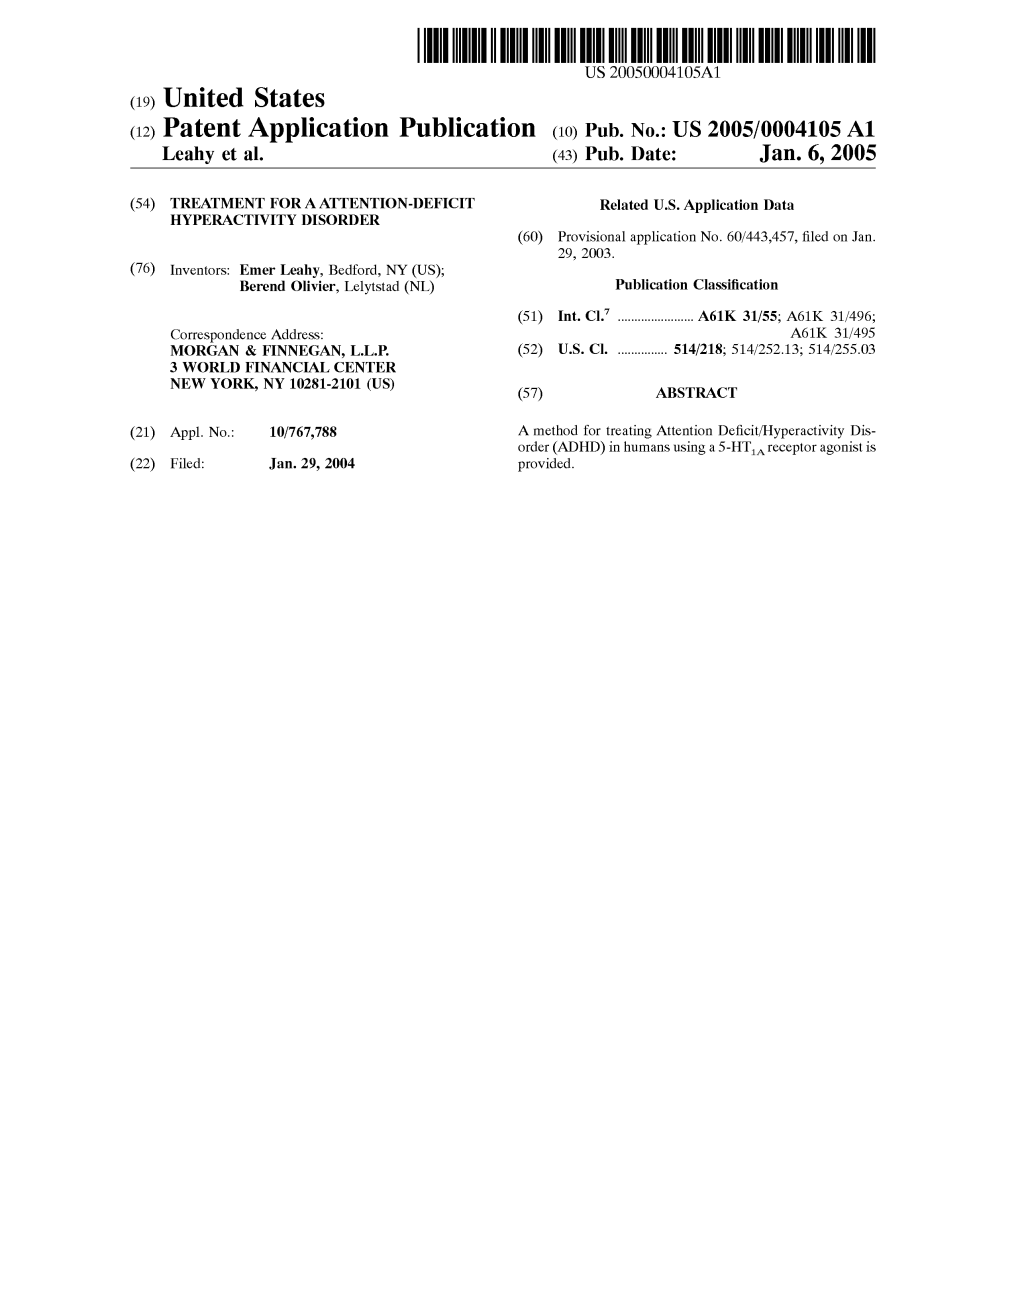 (12) Patent Application Publication (10) Pub. No.: US 2005/0004105 A1 Leahy Et Al